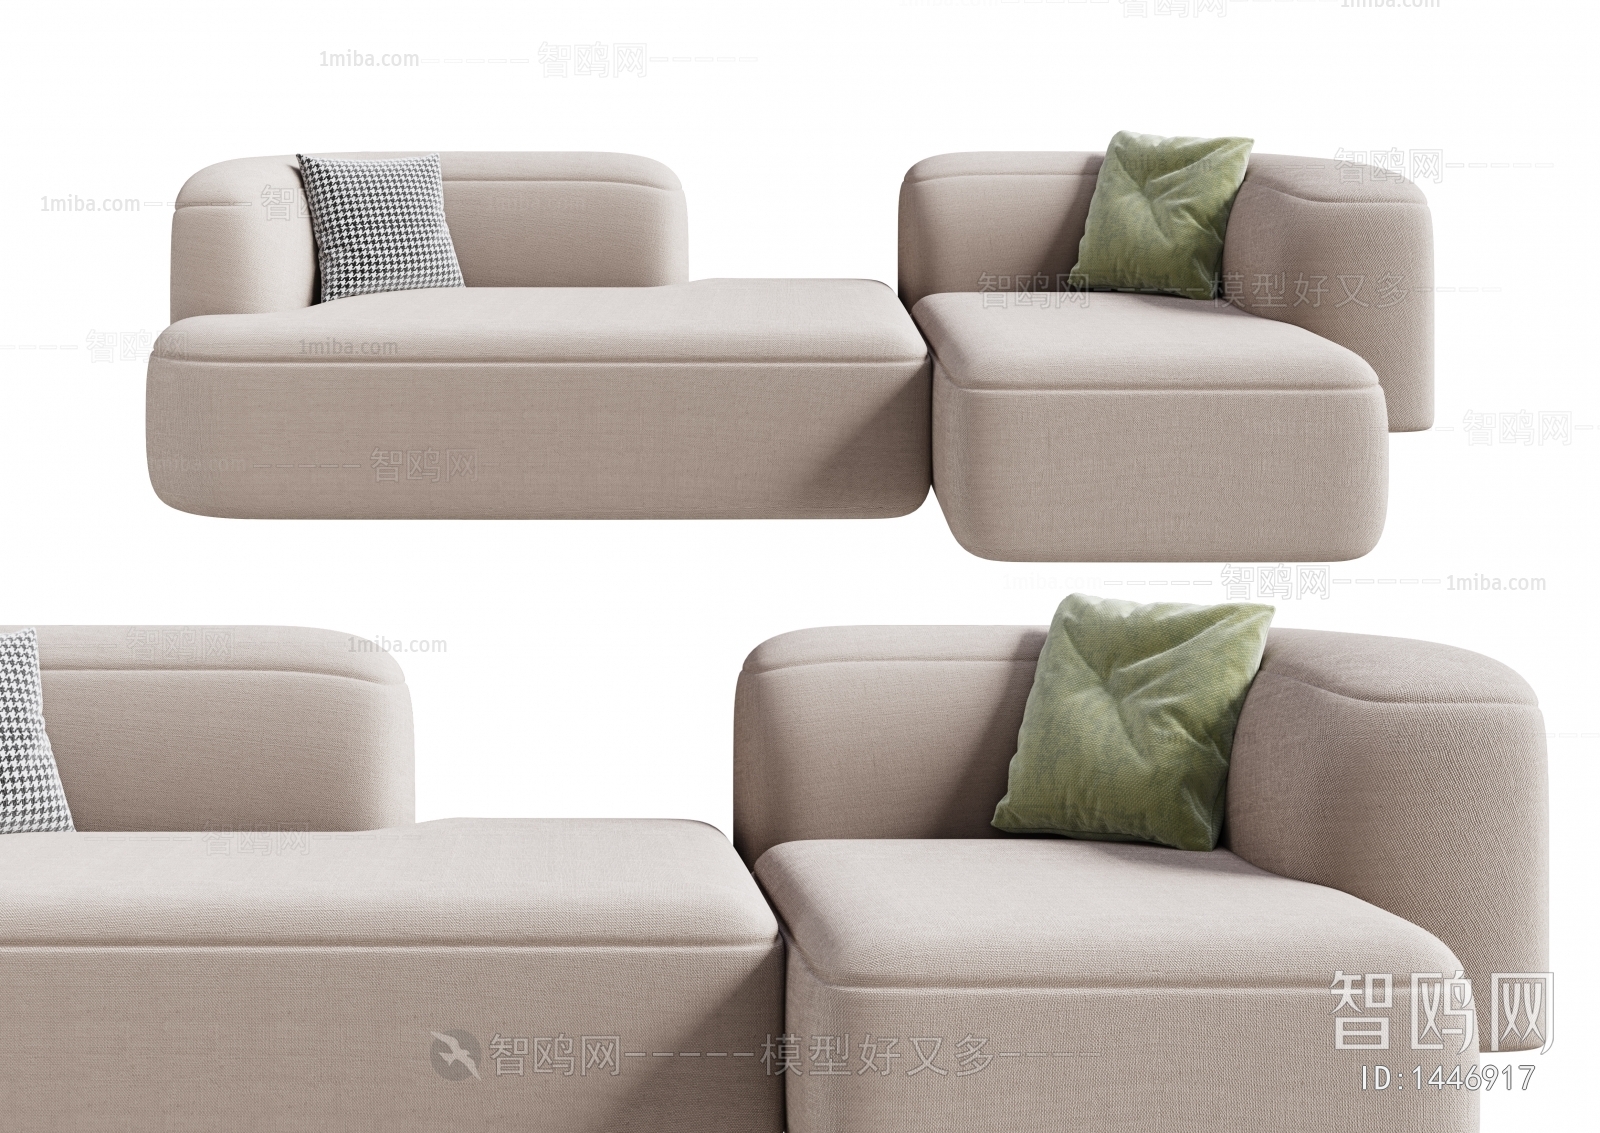 Wabi-sabi Style Multi Person Sofa